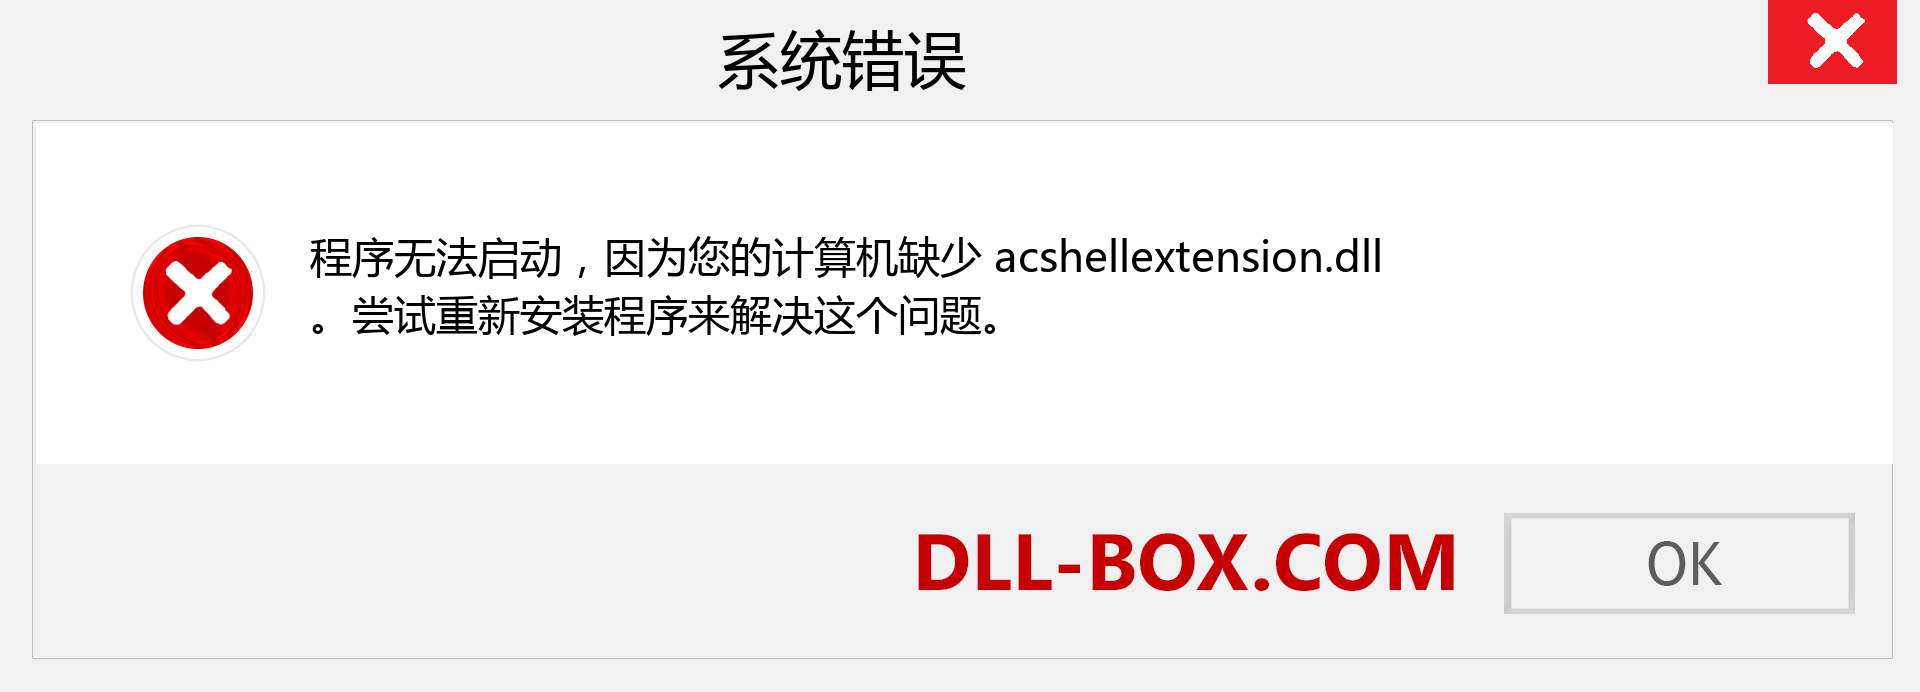 acshellextension.dll 文件丢失？。 适用于 Windows 7、8、10 的下载 - 修复 Windows、照片、图像上的 acshellextension dll 丢失错误